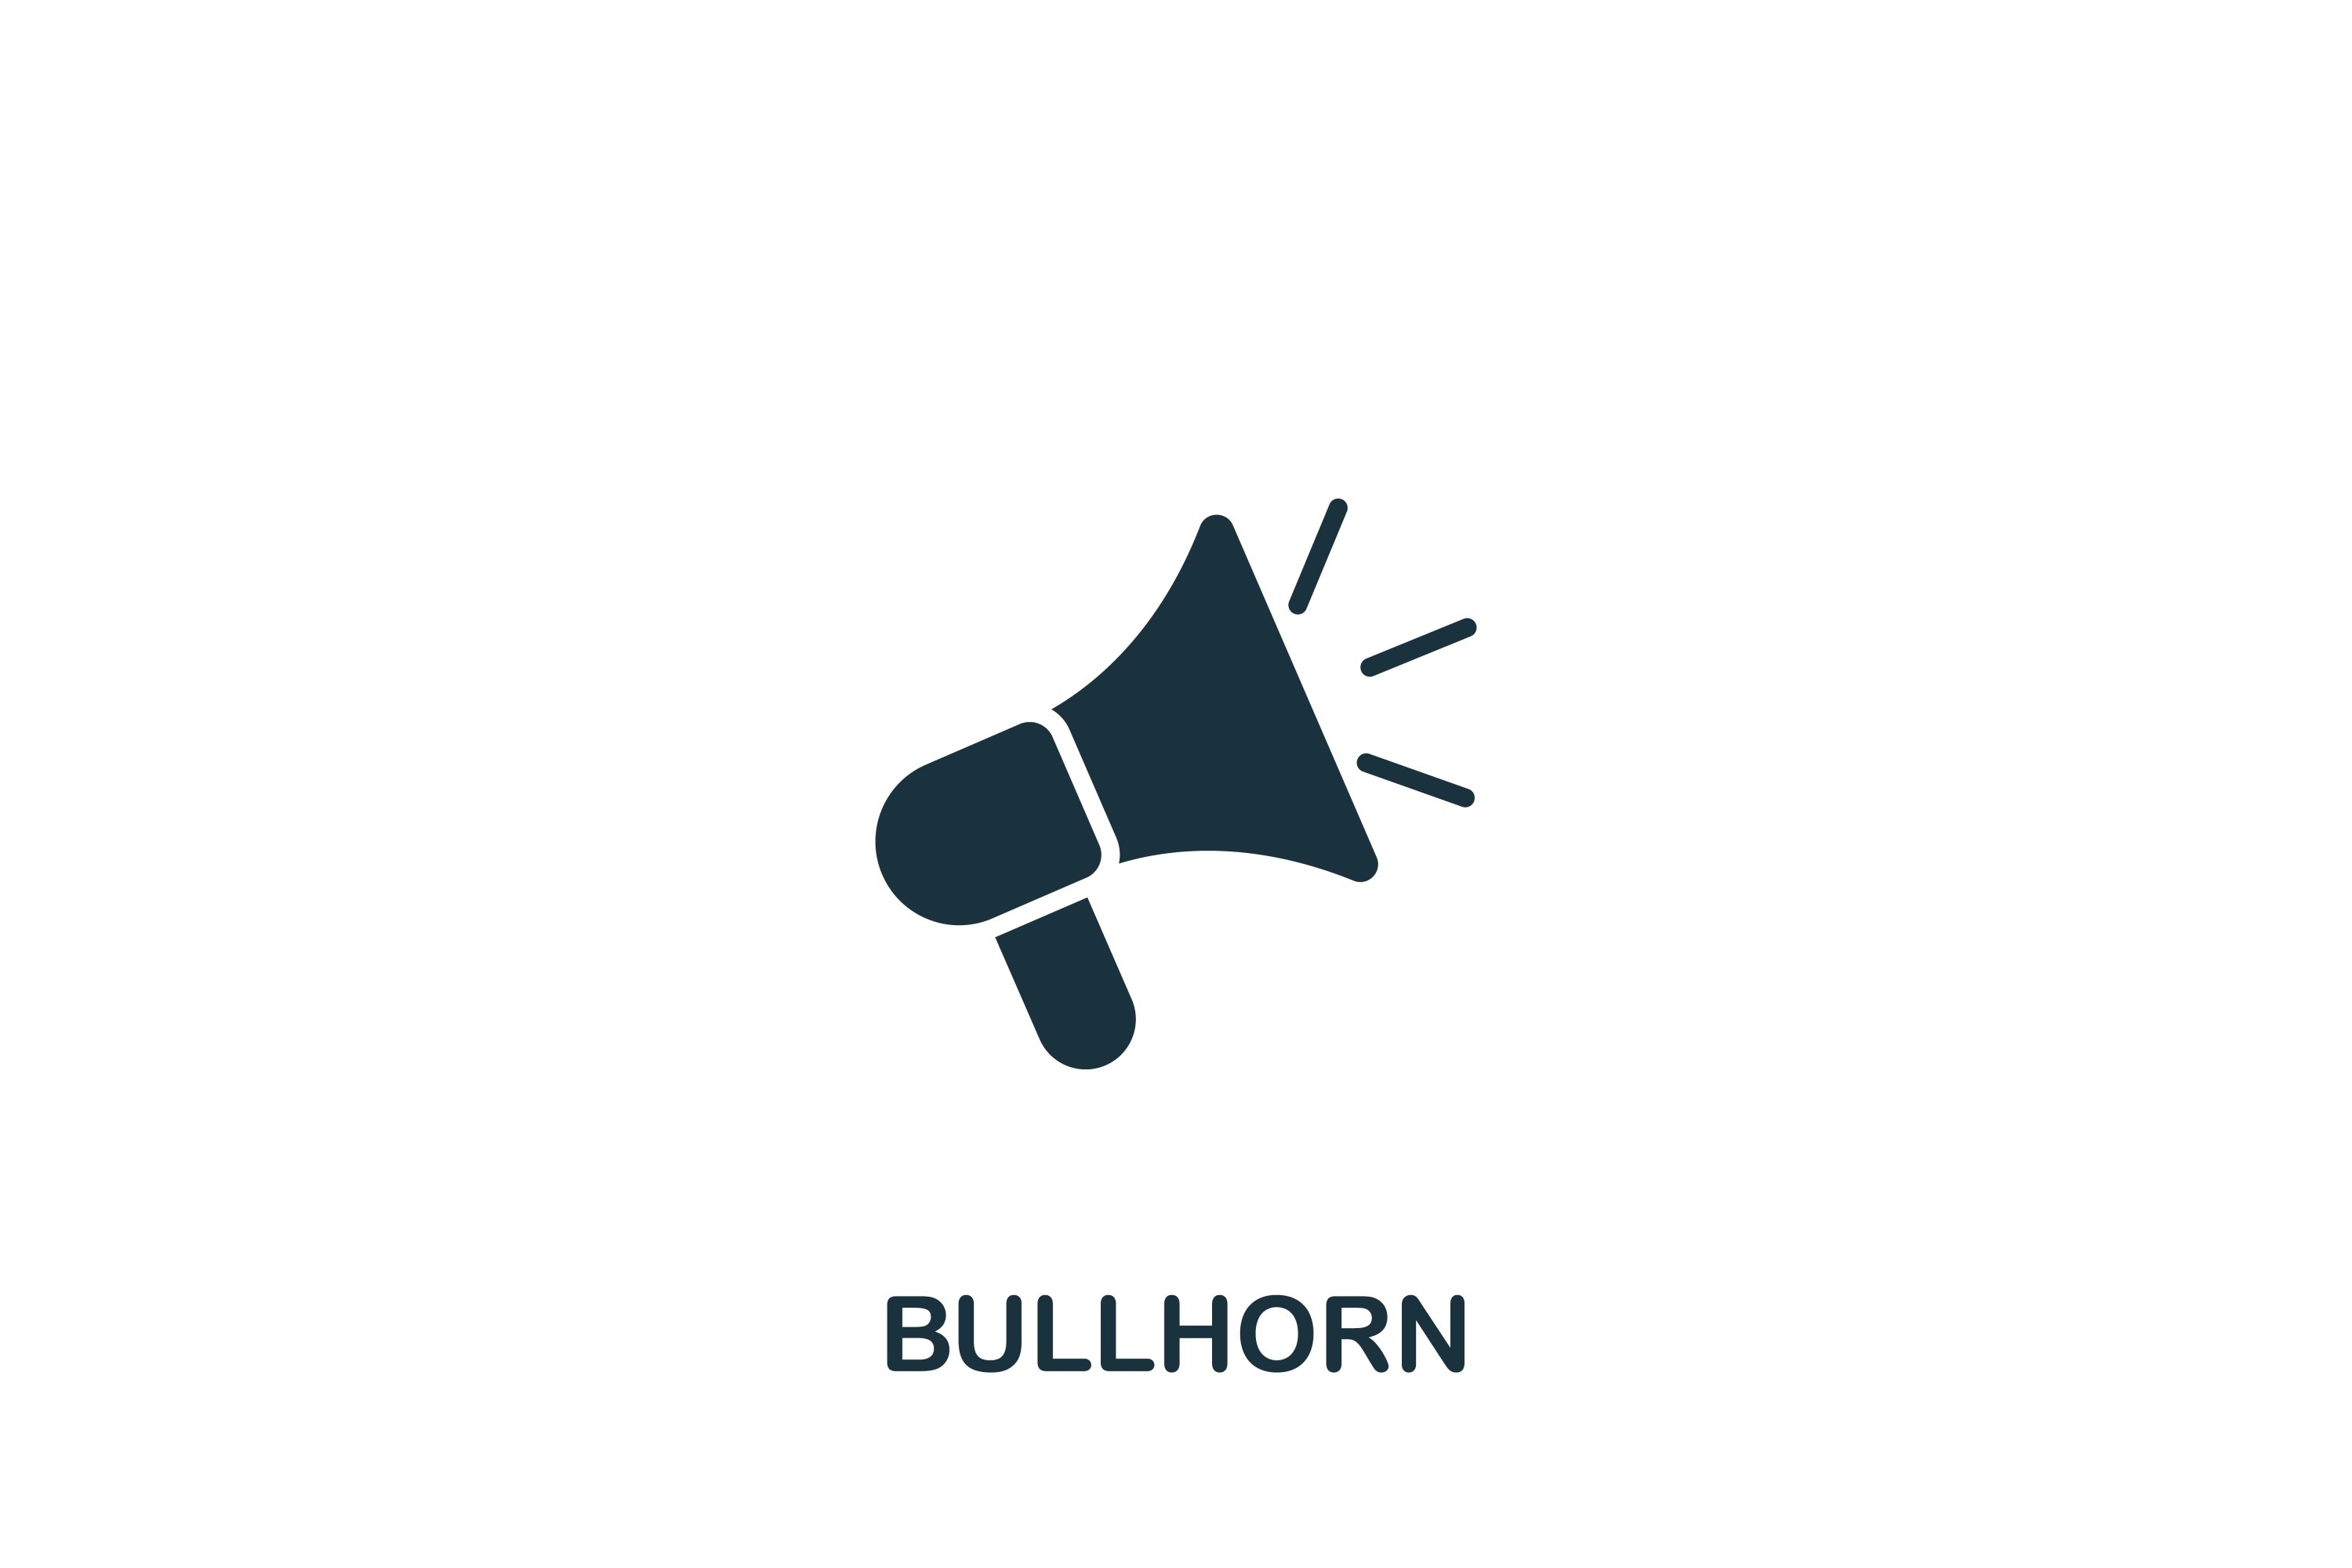 Bullhorn Icon Grafik Von aimagenarium · Creative Fabrica